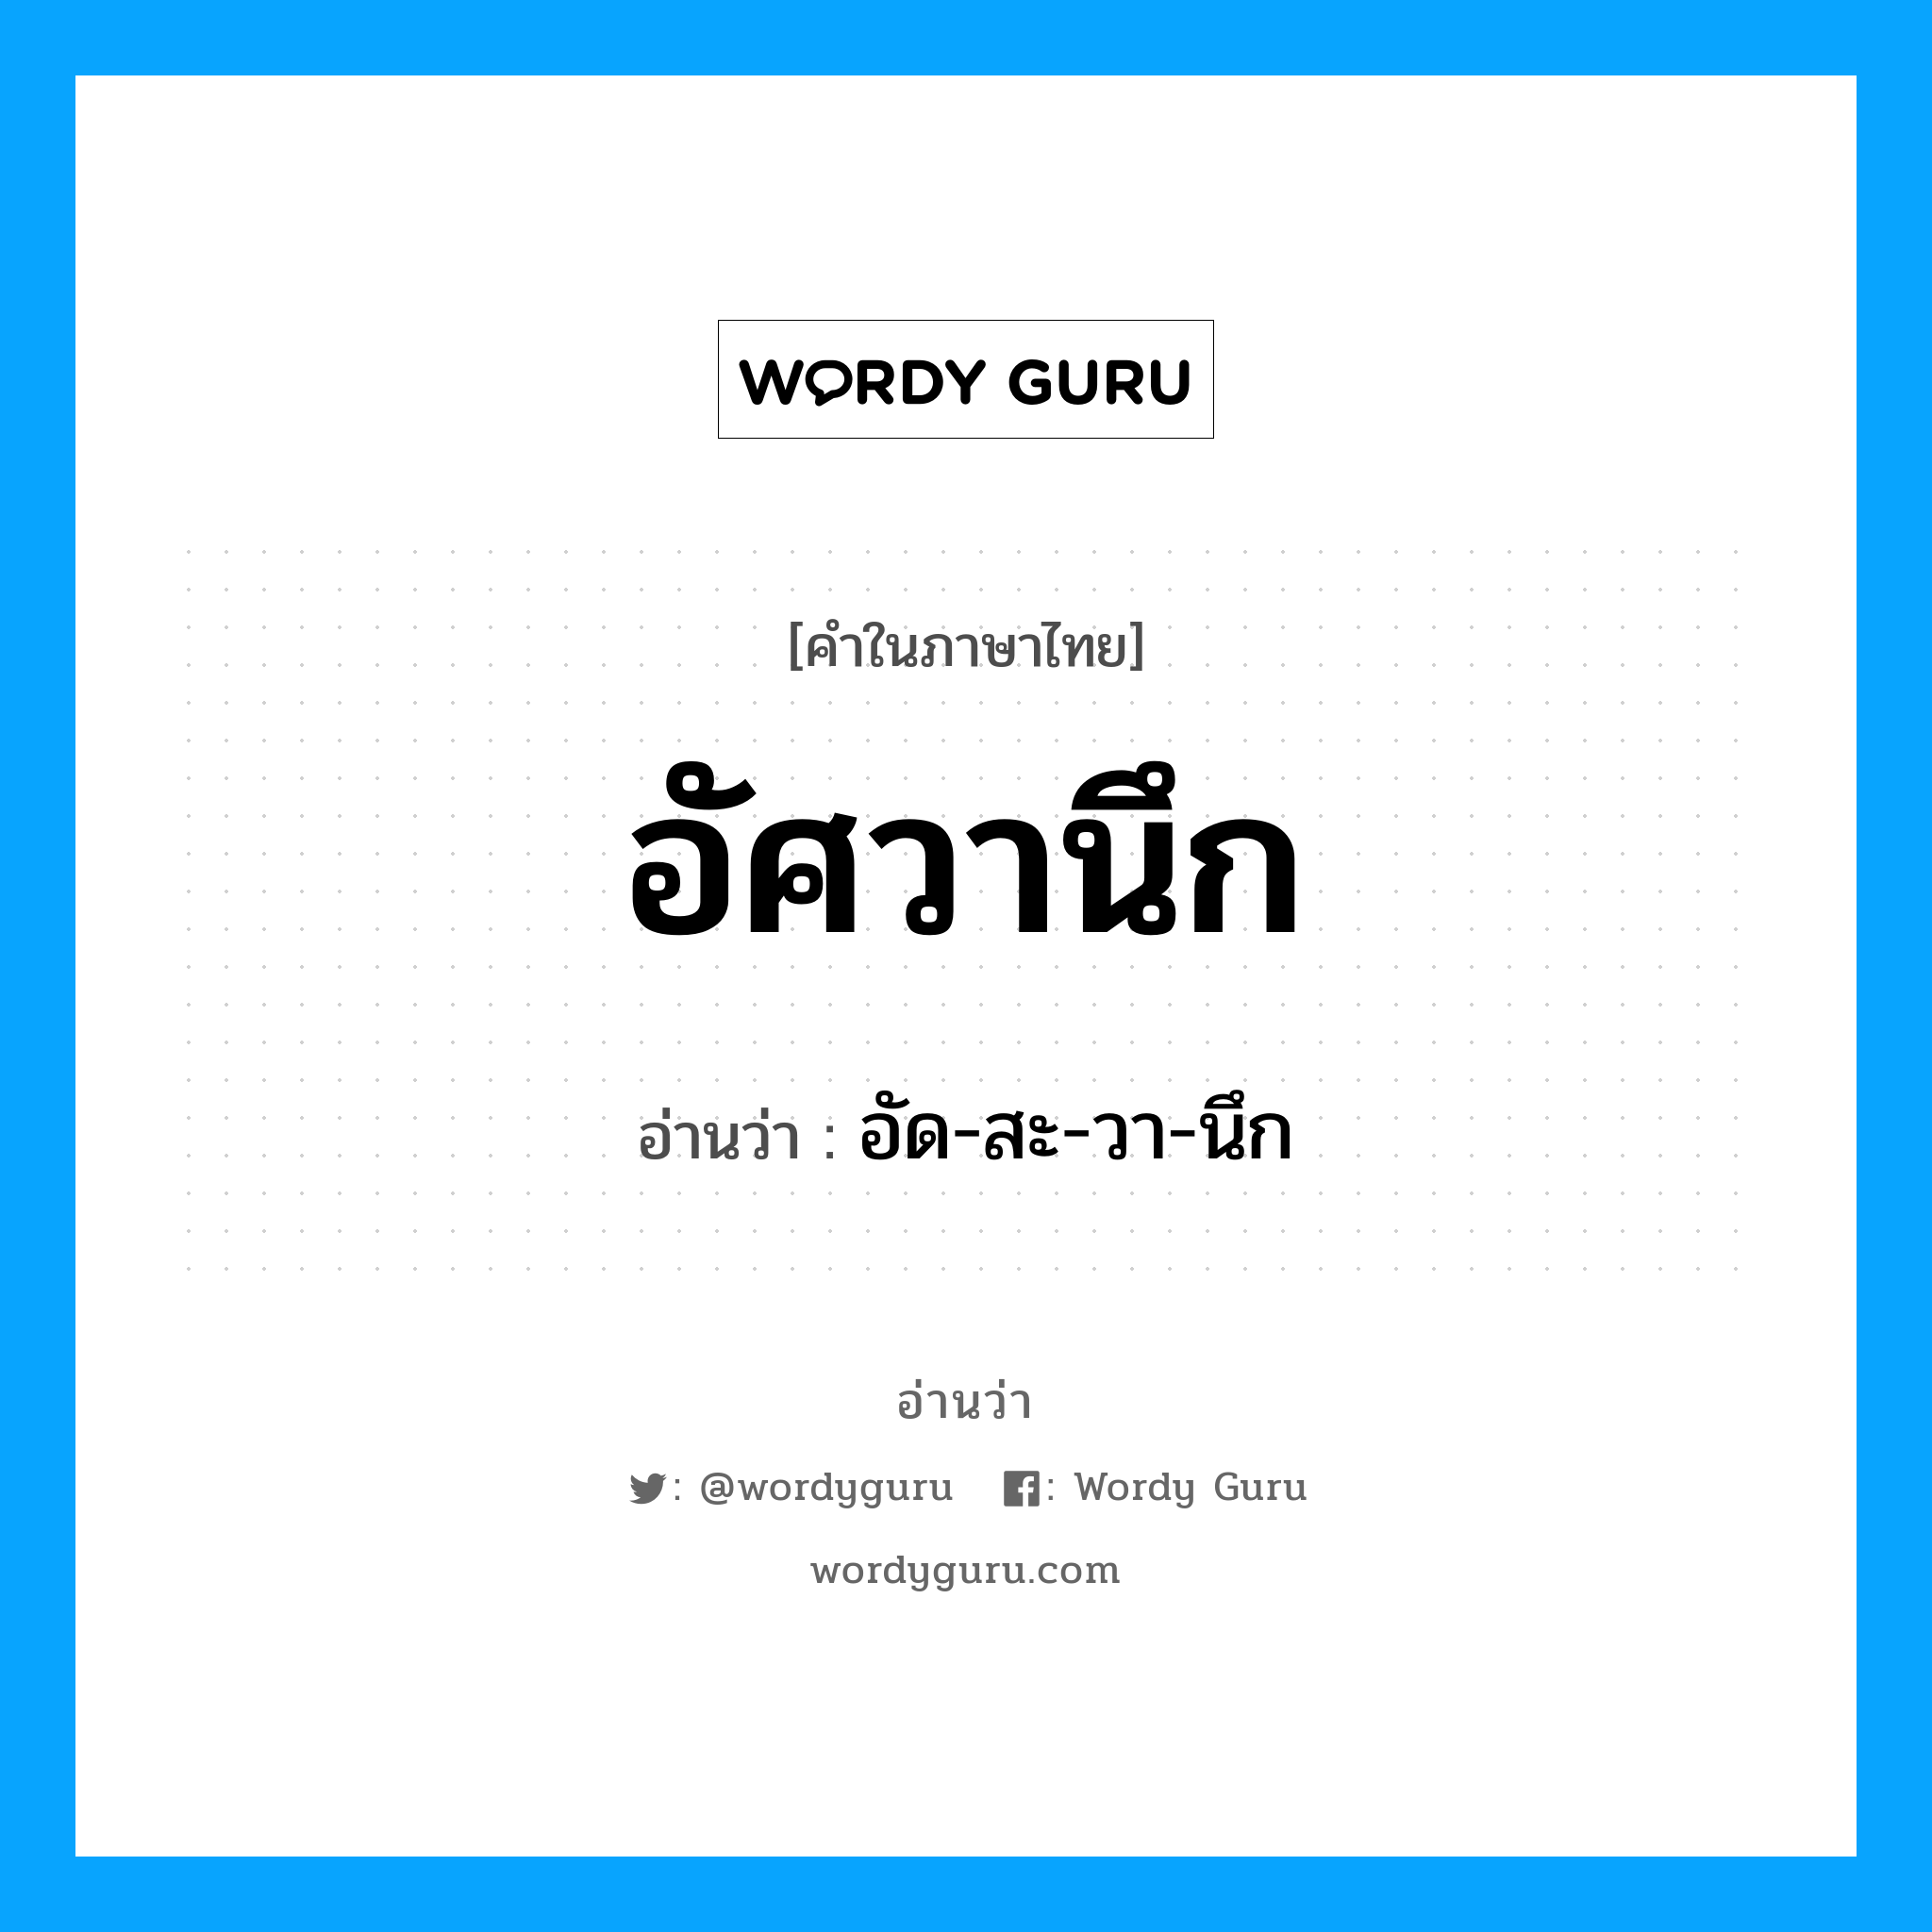 อัด-สะ-วา-นึก เป็นคำอ่านของคำไหน?, คำในภาษาไทย อัด-สะ-วา-นึก อ่านว่า อัศวานึก